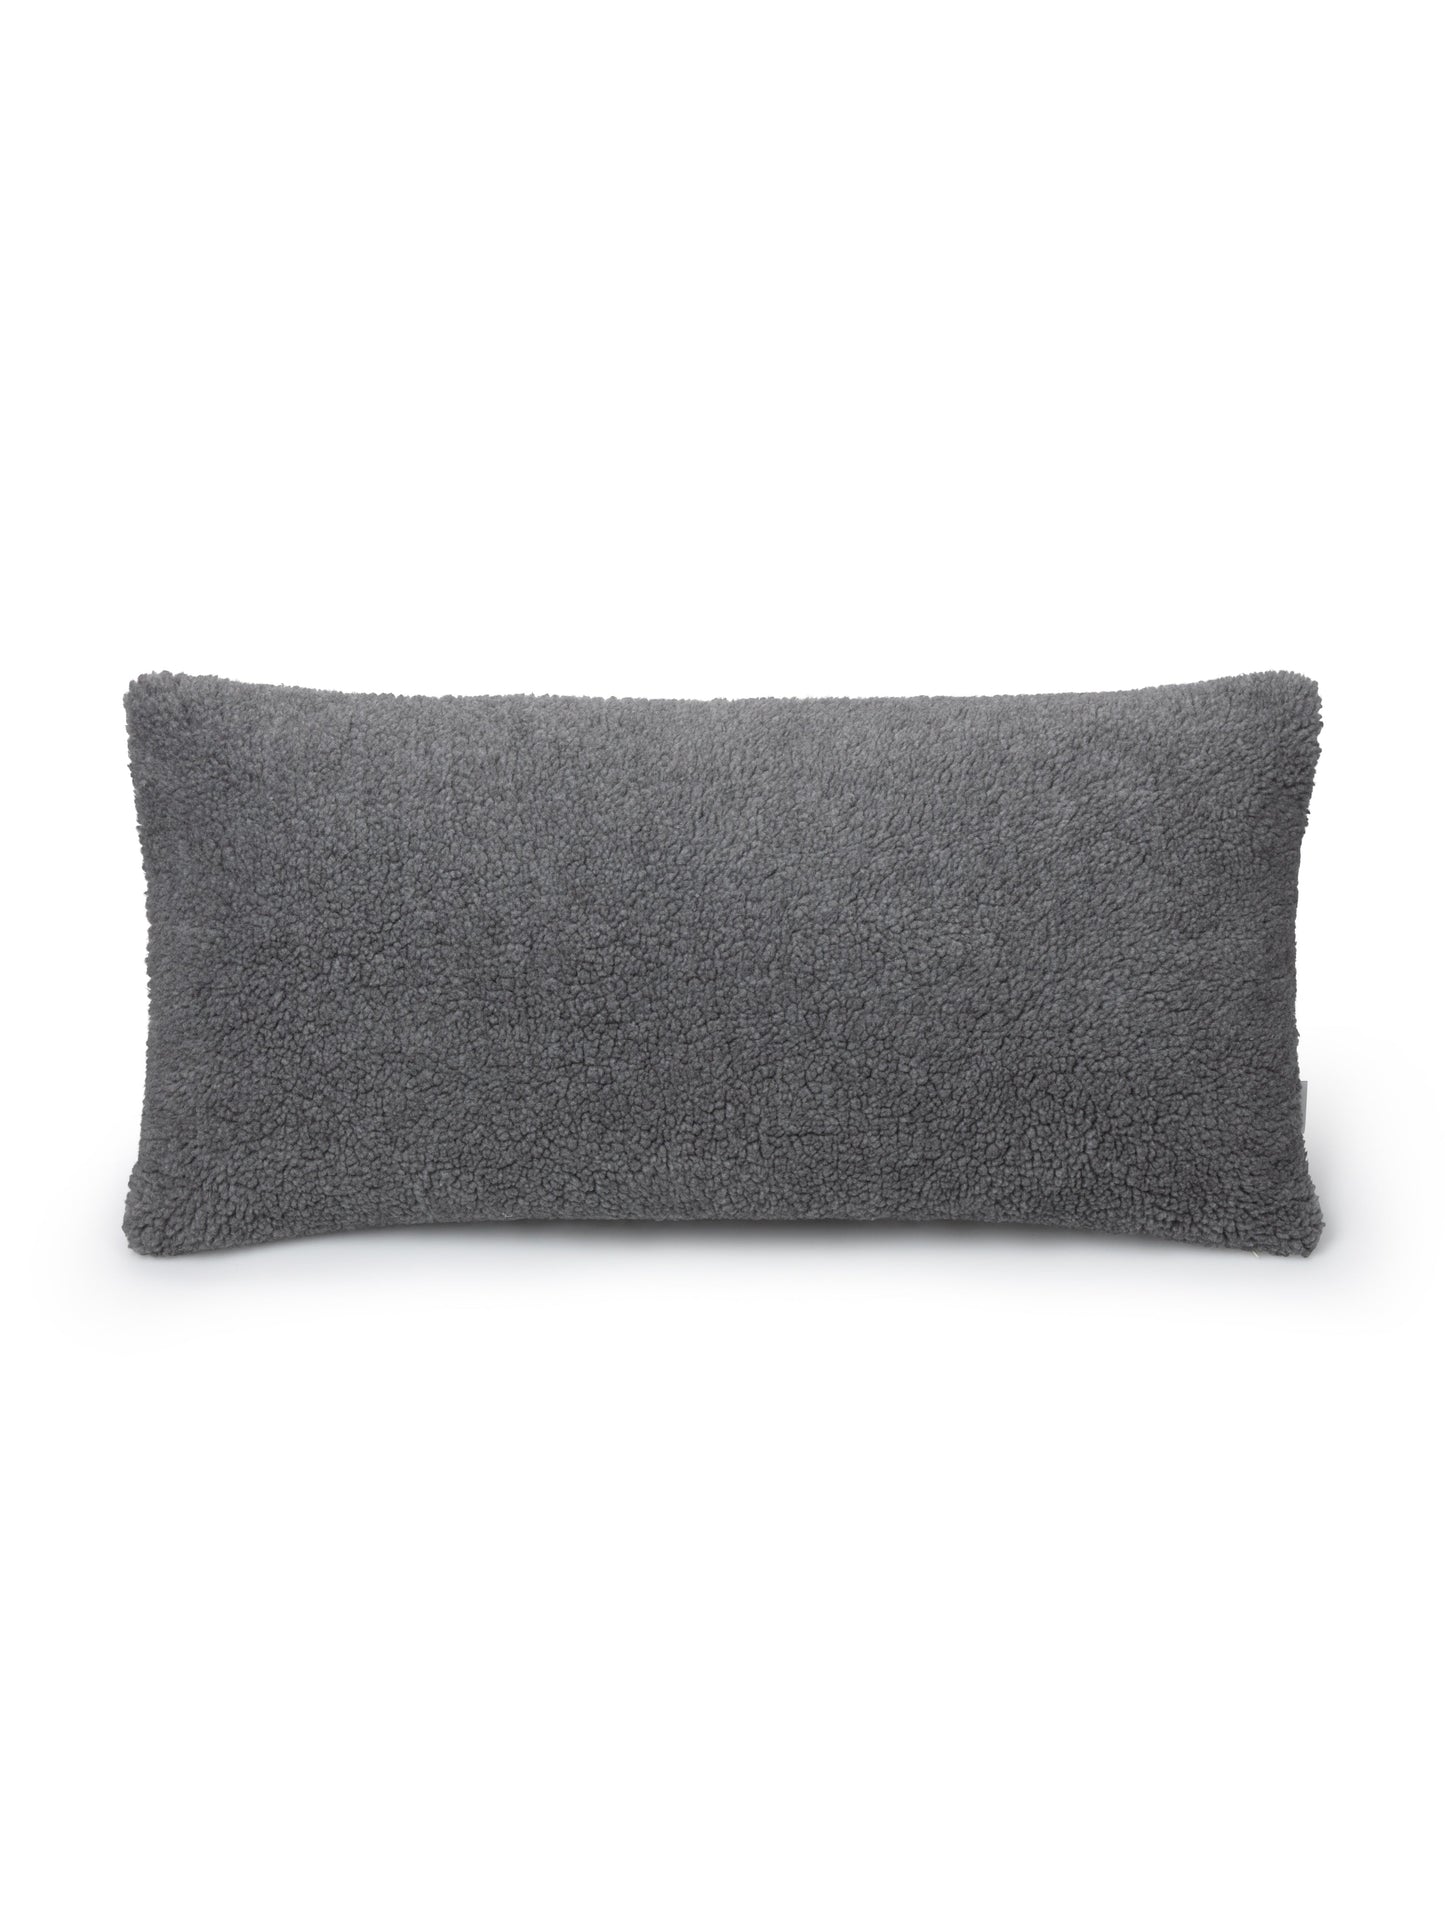 Grey Sheepskin Rectangular Cushion